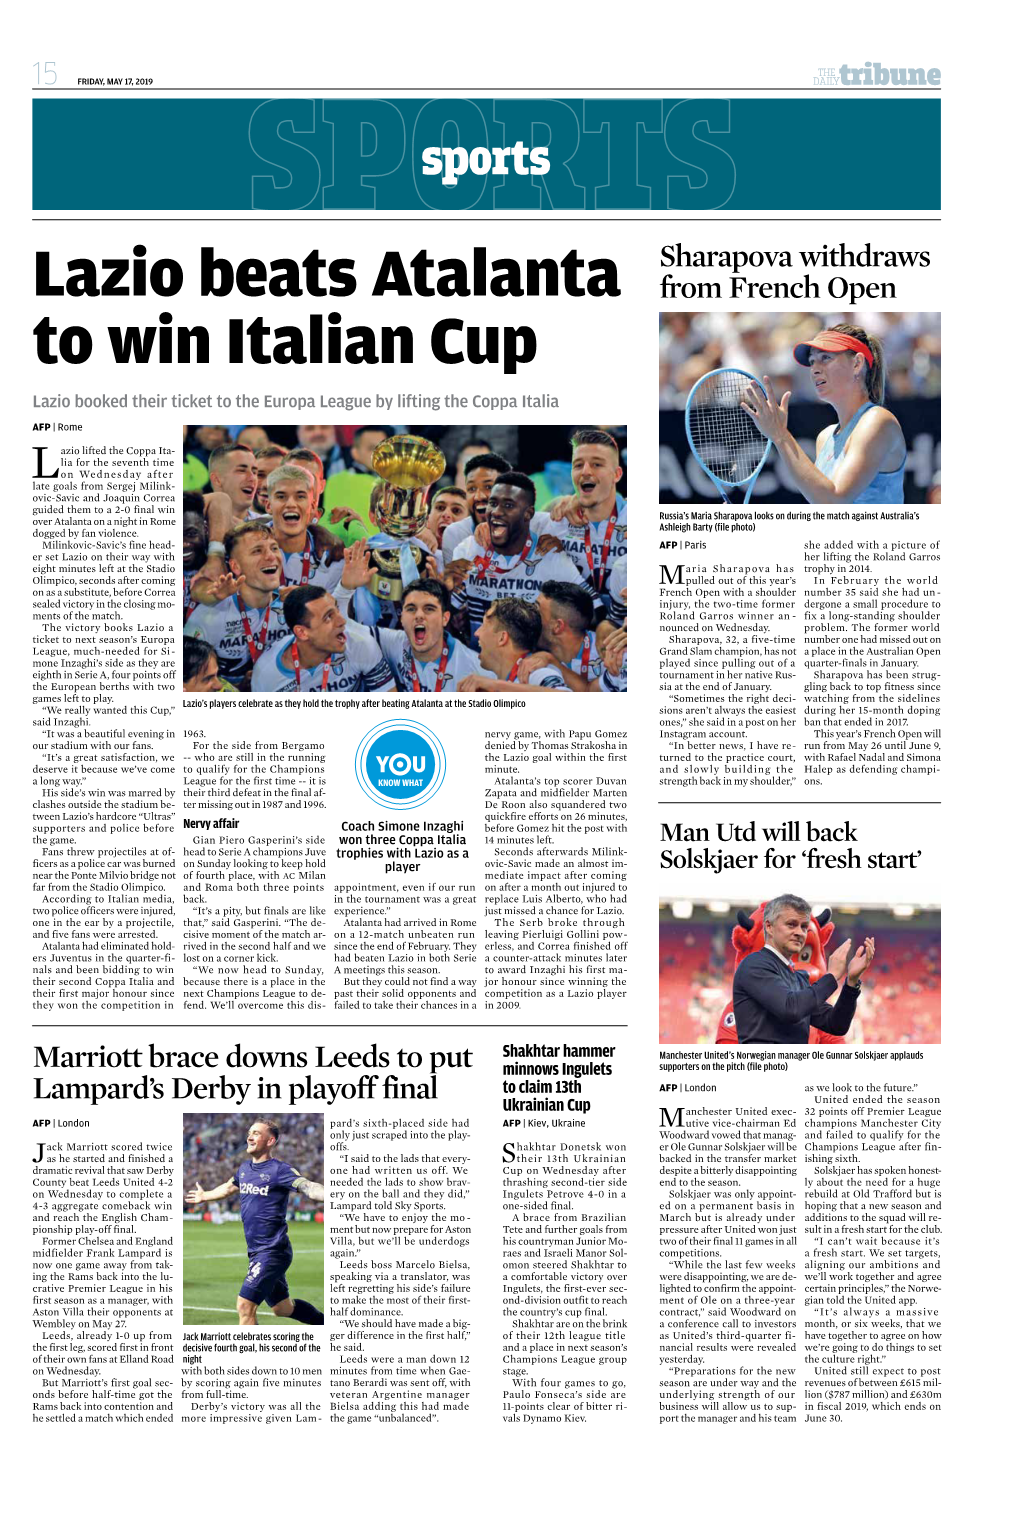 Lazio Beats Atalanta to Win Italian